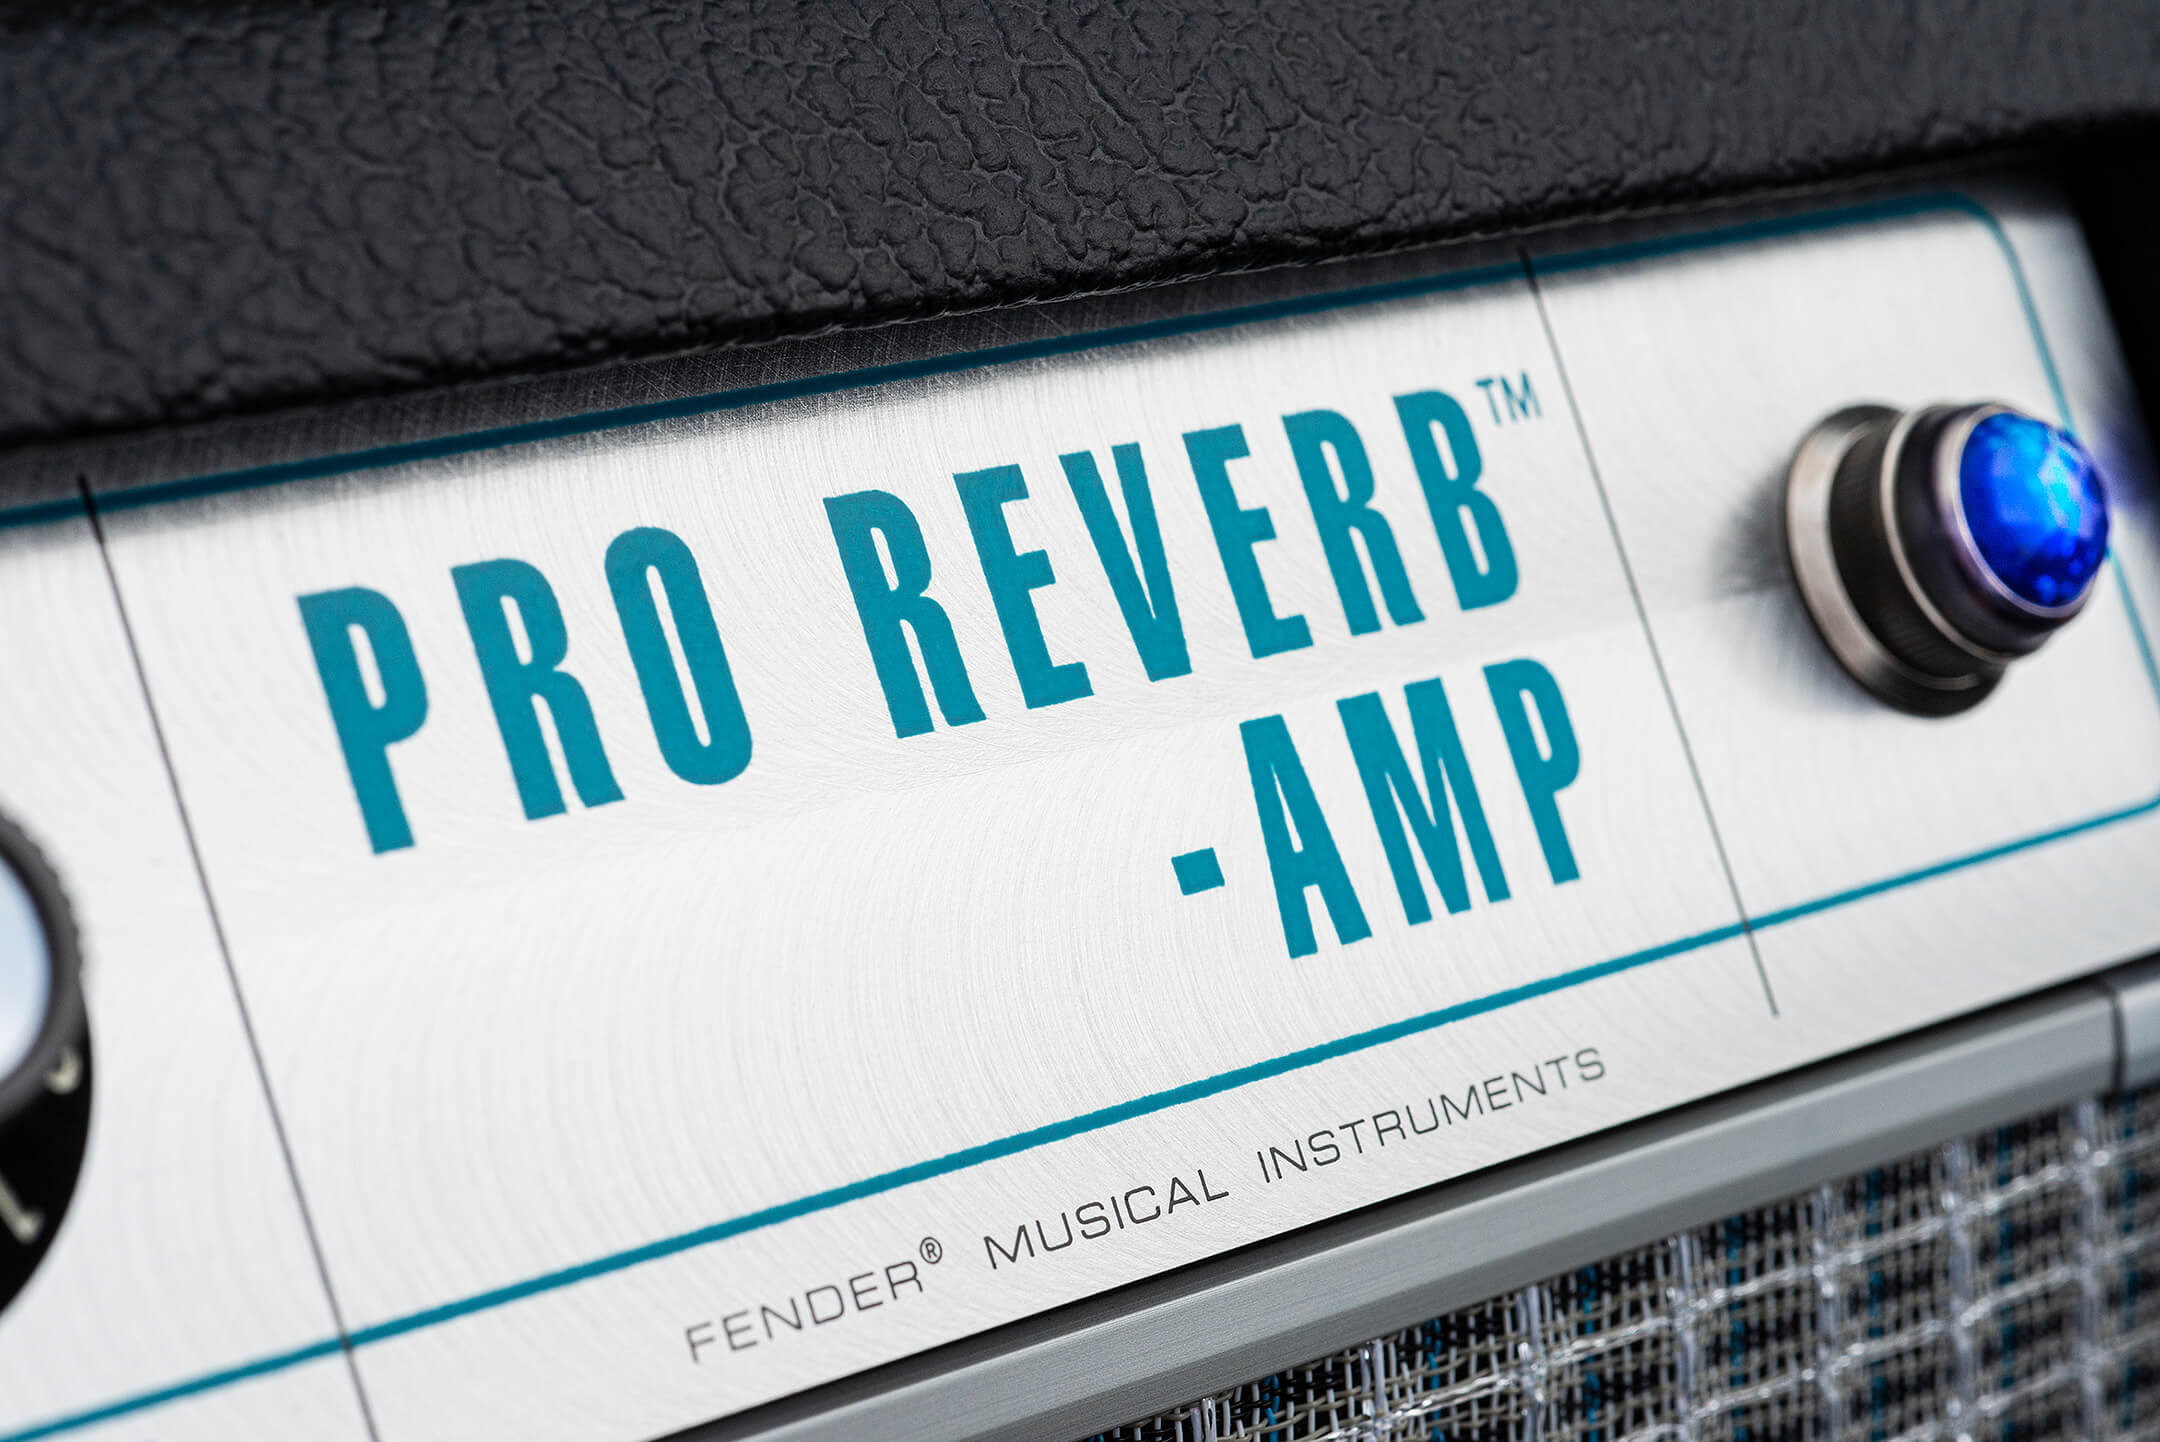 Fender '68 Custom Pro Reverb